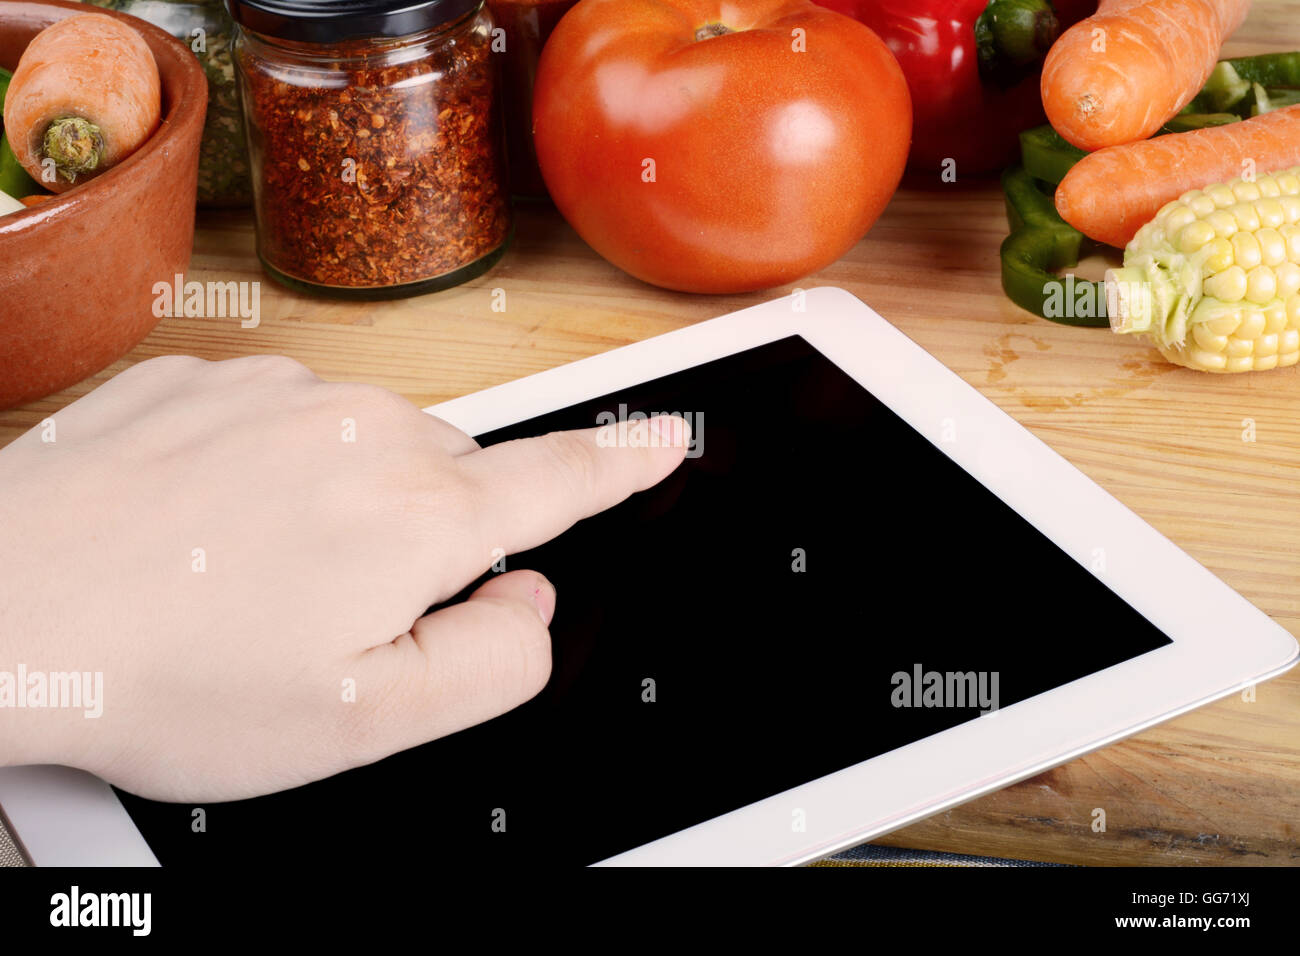 Personne de préparer des aliments à partir de la fiche sur tablette avec légumes et épices. Concept d'aliments sains. Banque D'Images